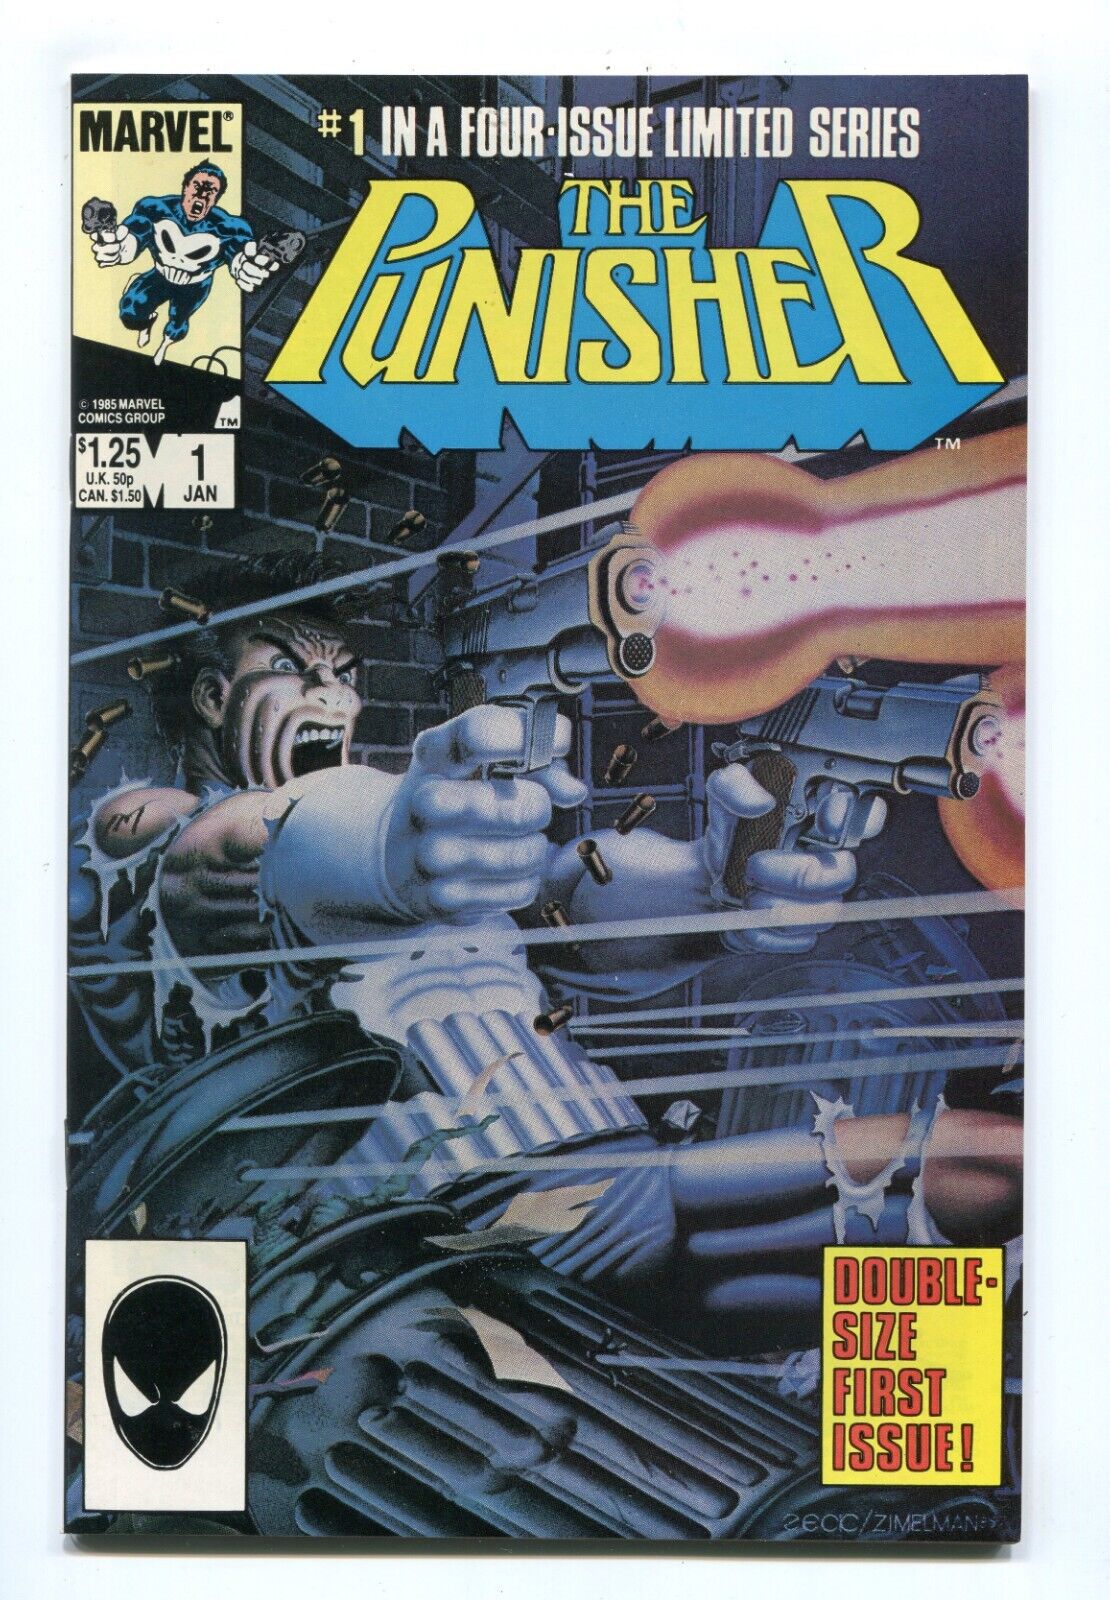 THE PUNISHER #1 - ORIGIN RETOLD - JIGSAW - 1ST APPS - SUPER HIGH GRADE - 1986